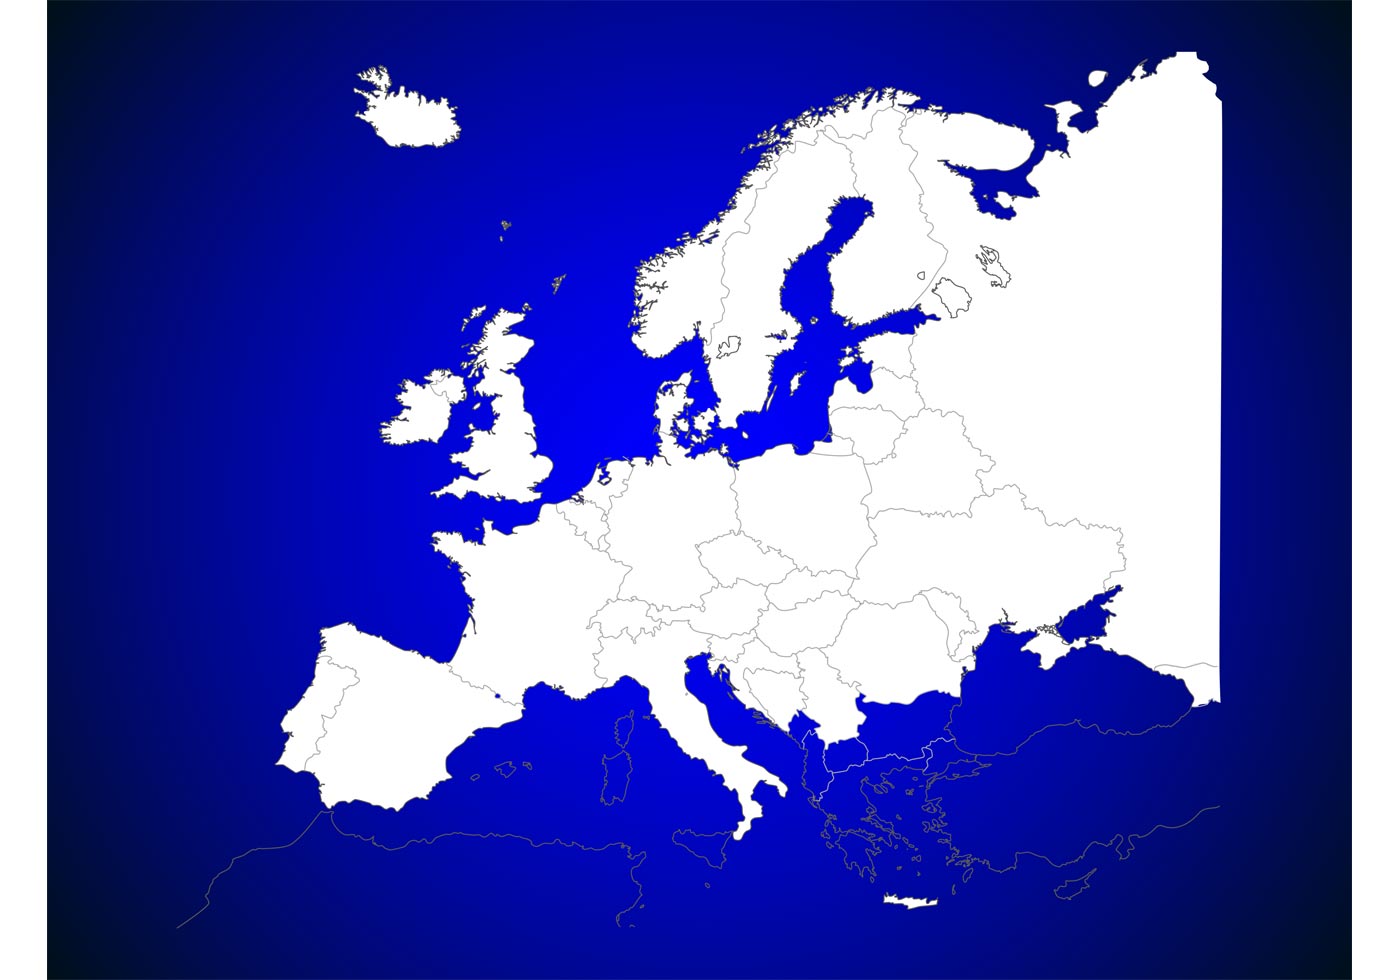 Eu u. Карта - Европа. Векторная карта Европы. Территория Европы. Карта Европы вектор.